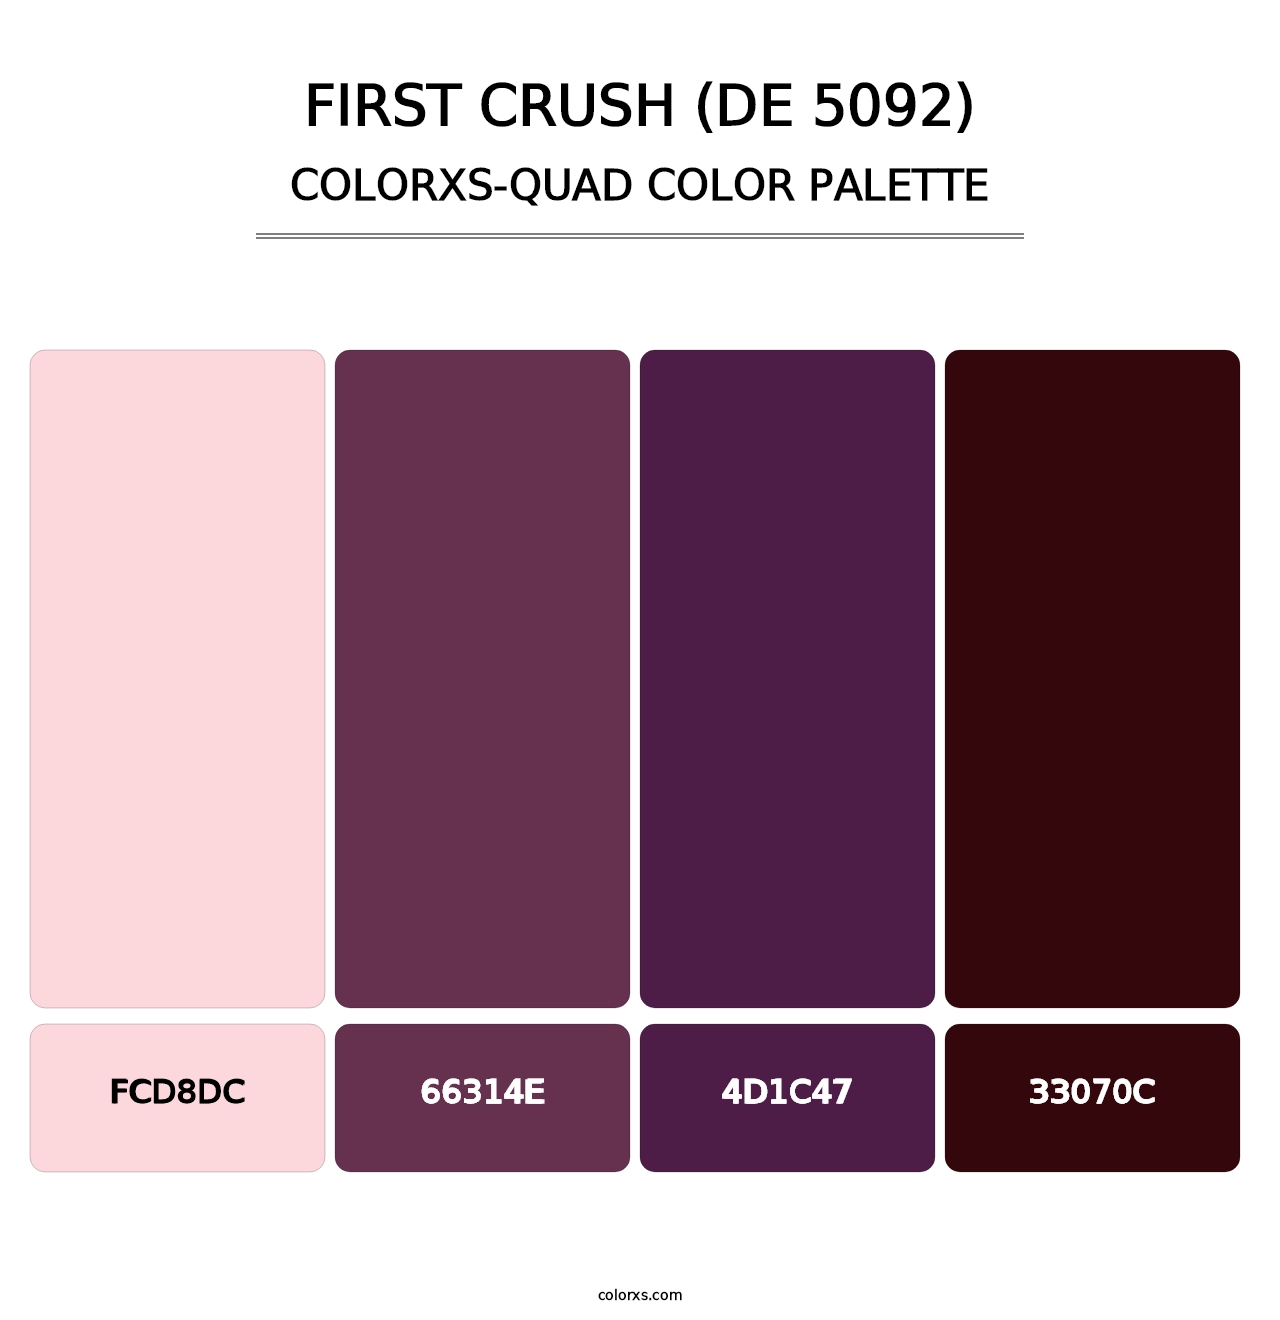 First Crush (DE 5092) - Colorxs Quad Palette